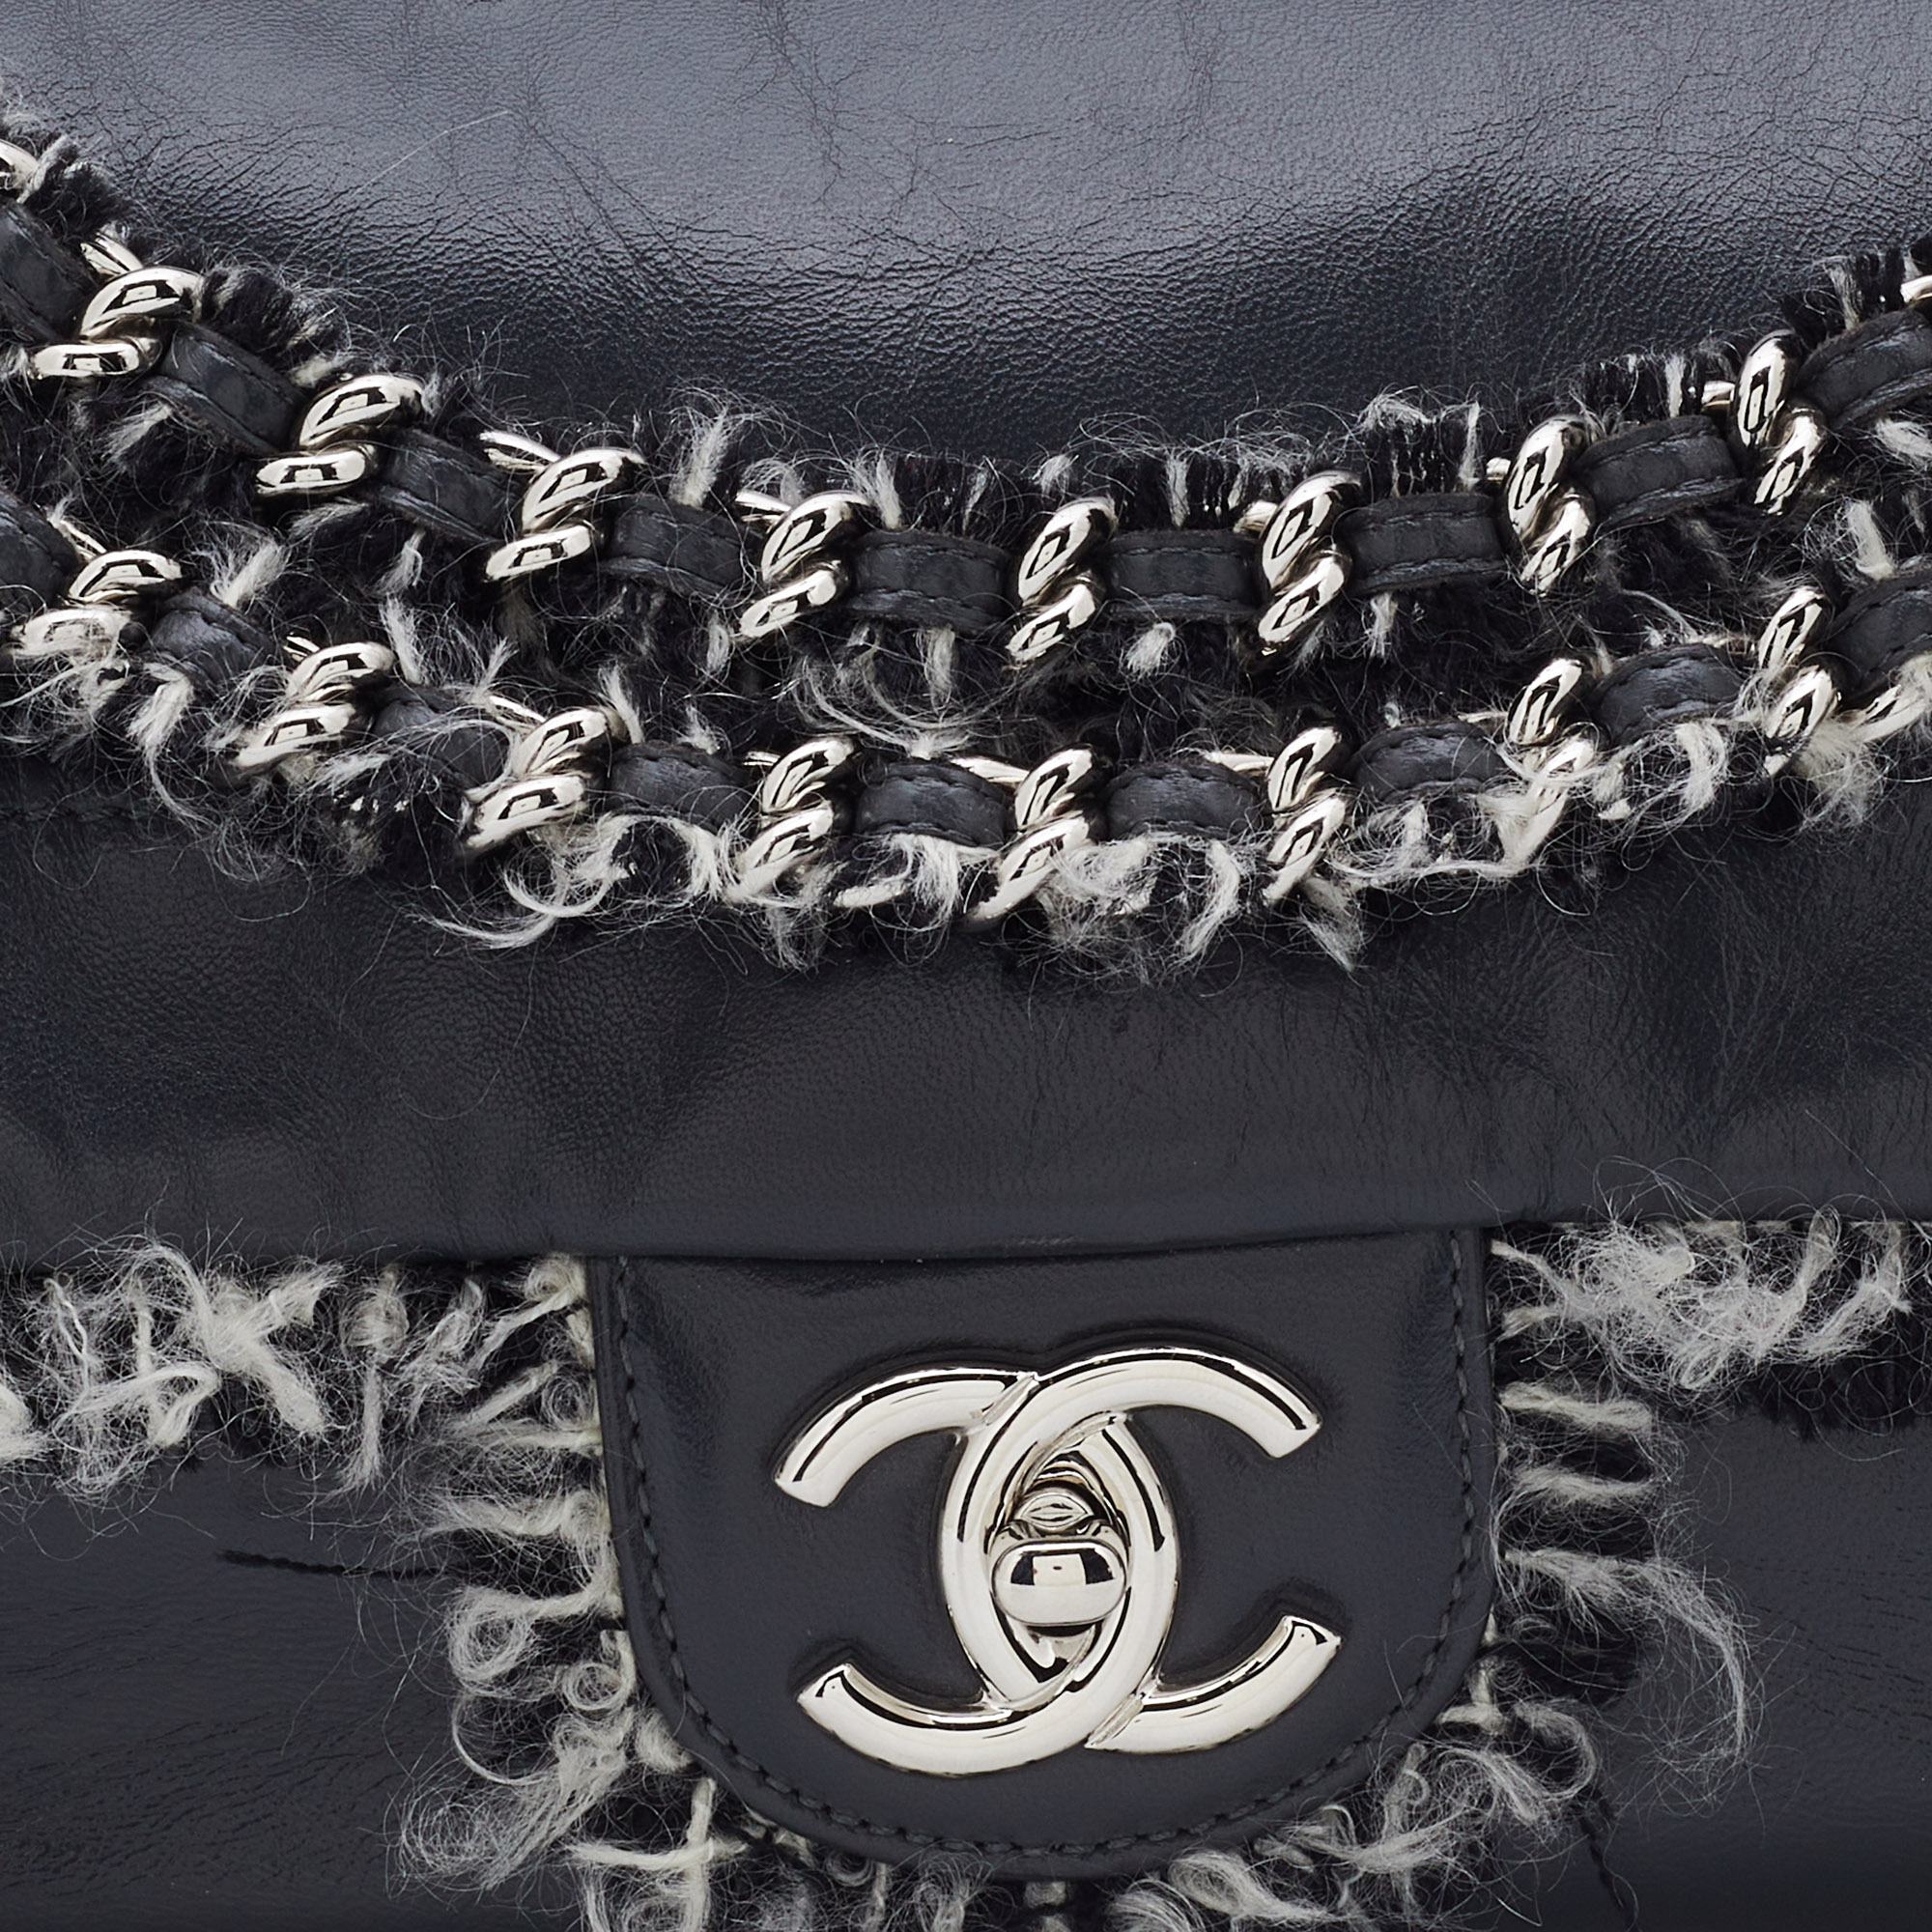 Chanel Grey Leather Funny Tweed Flap Shoulder Bag